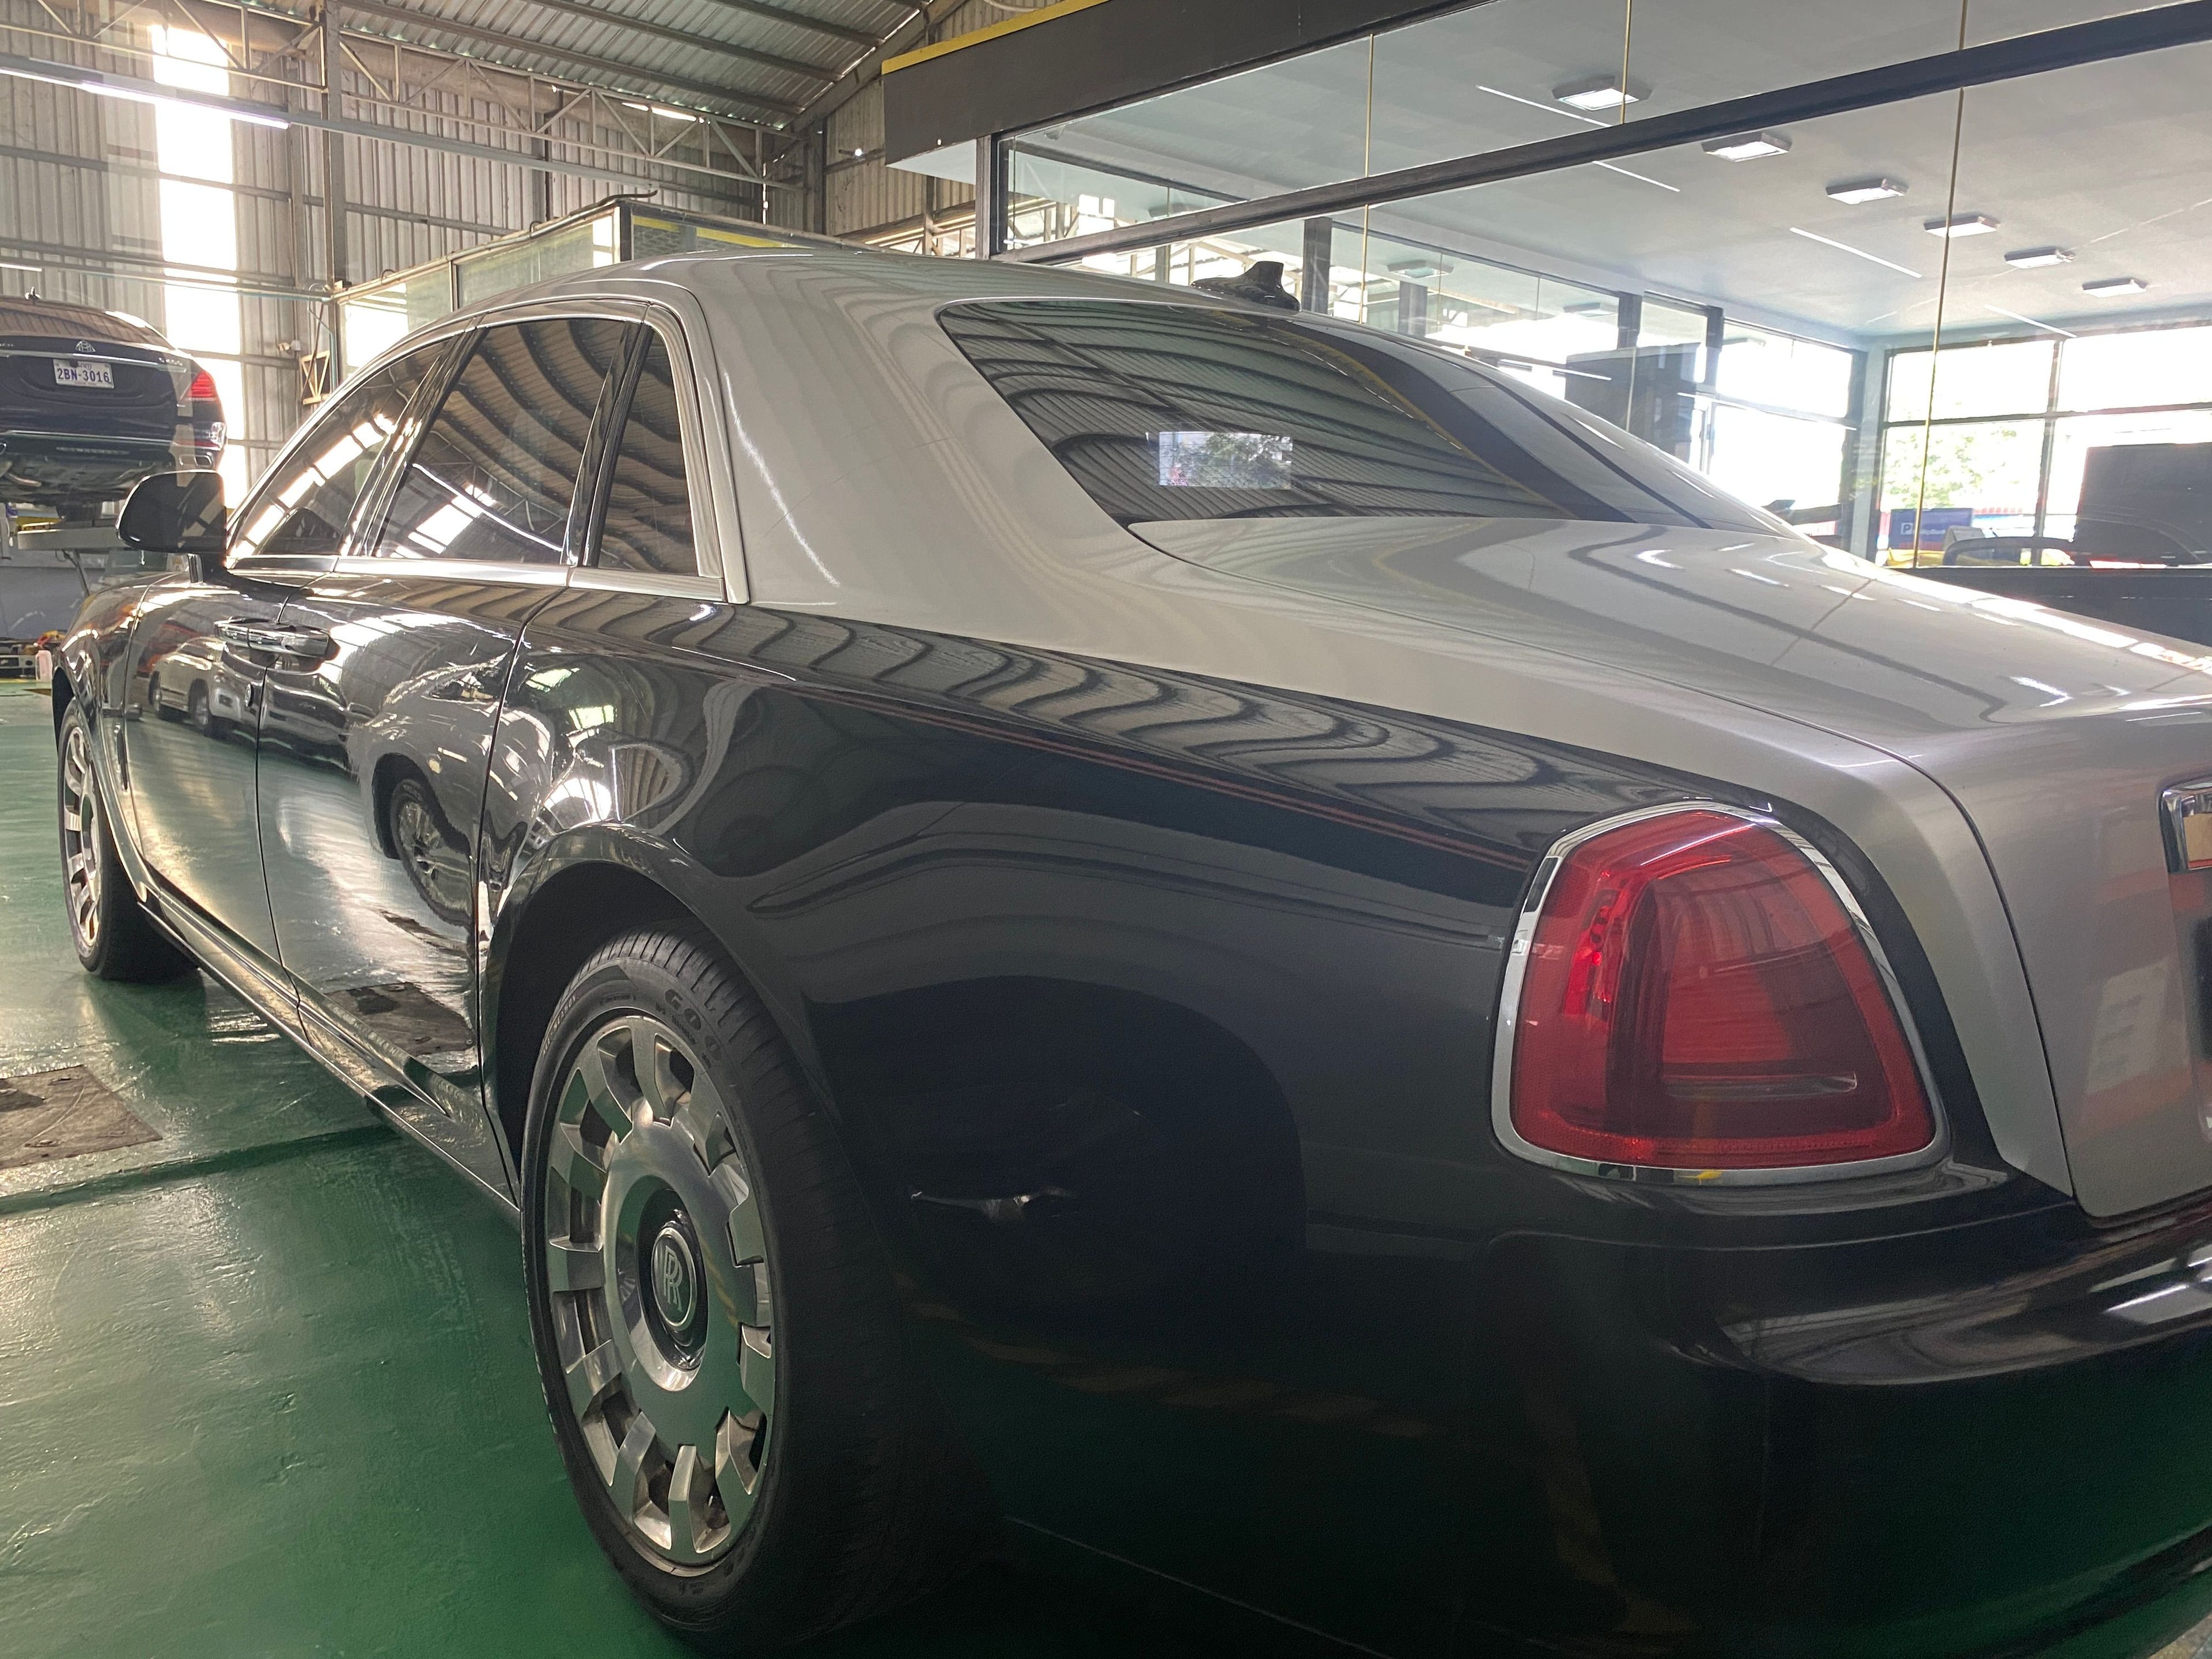 Rolls-Royce Ghost 2014